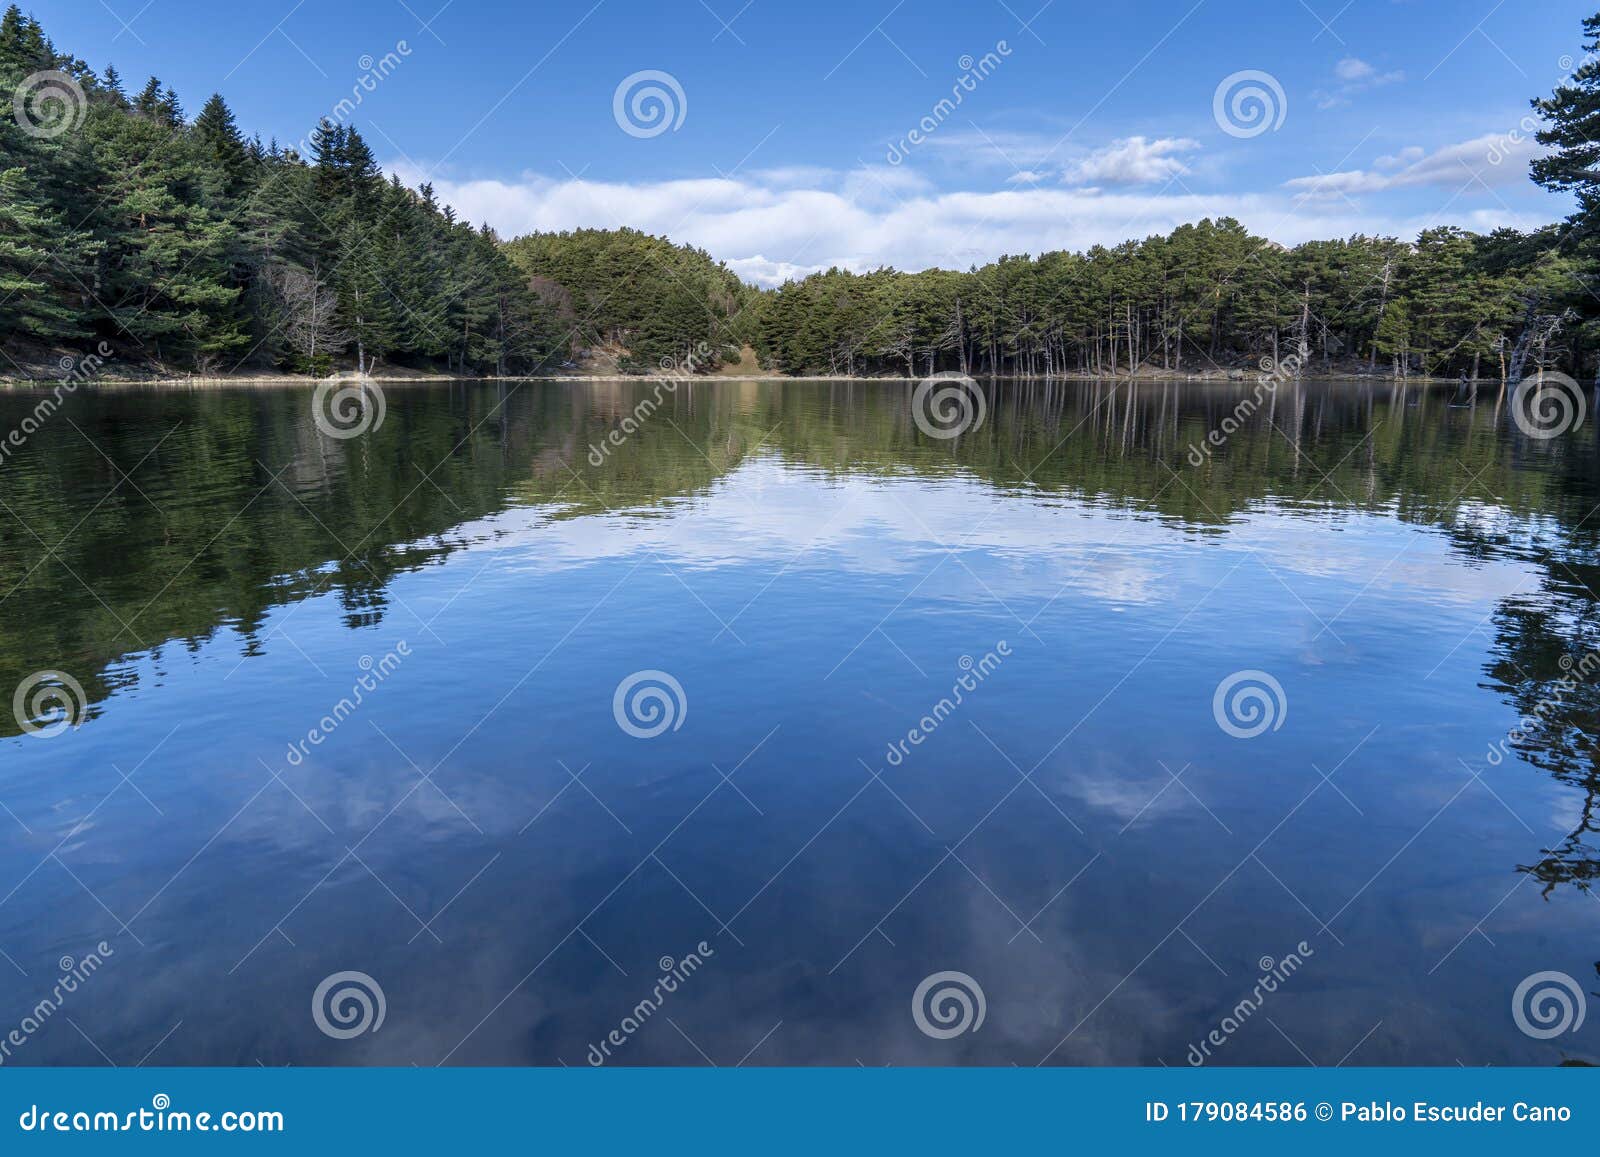 bassa dÃÂ´oles lake with reflection in winter